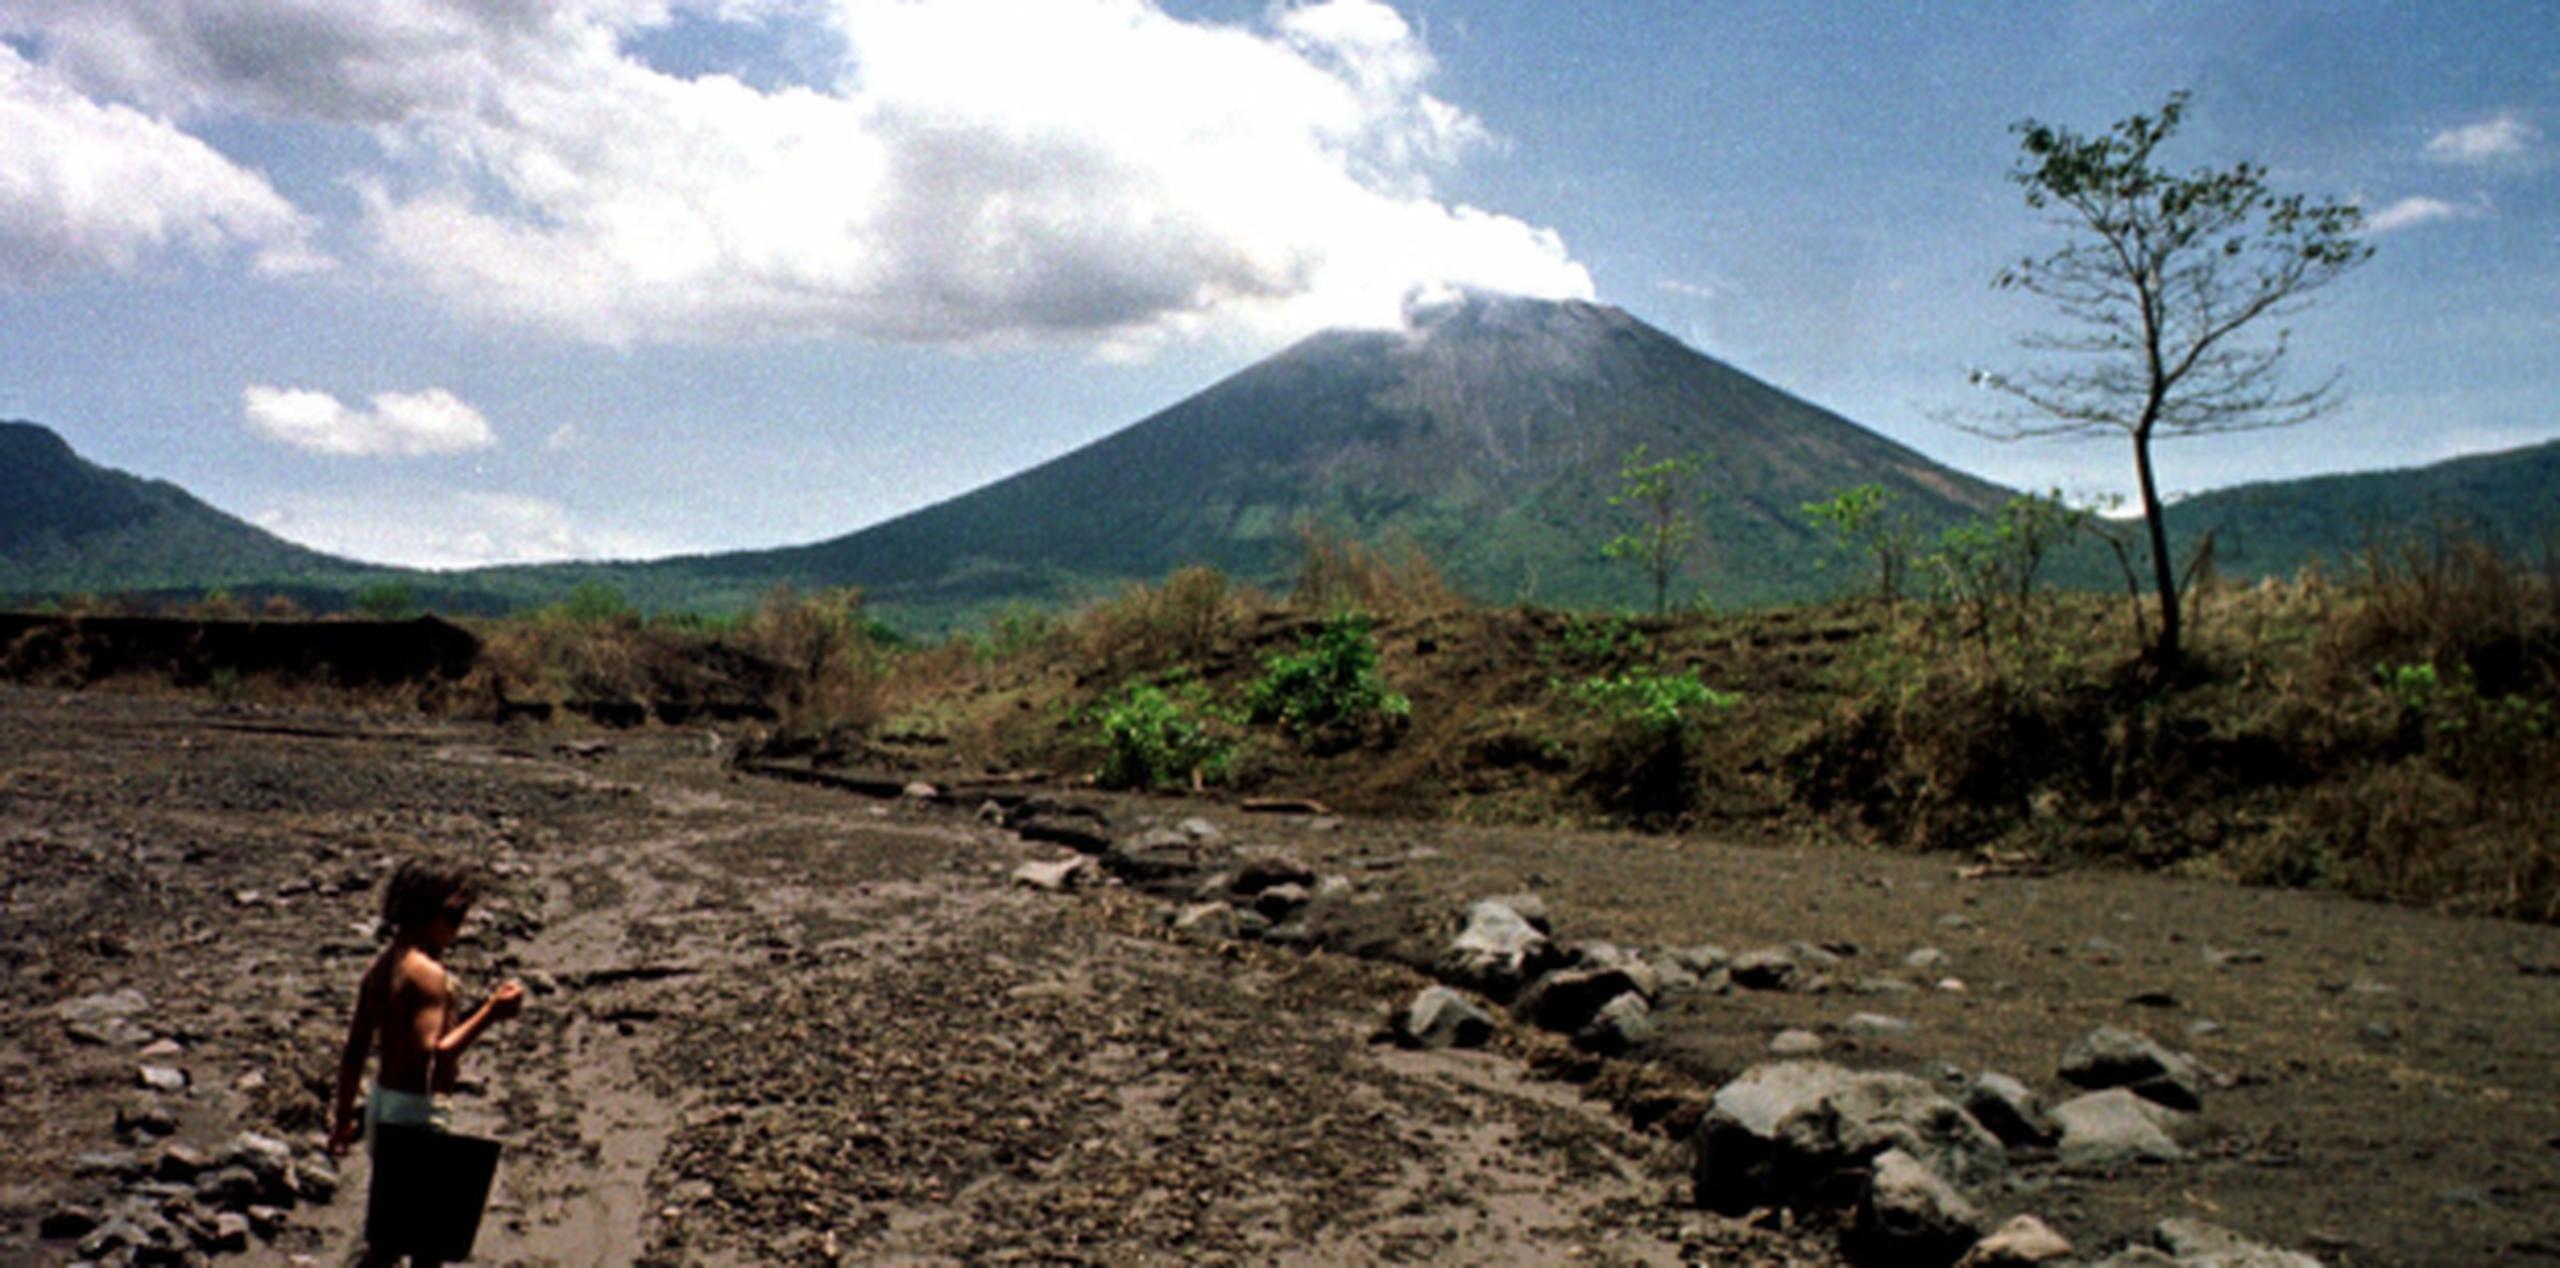 El volcán San Cristóbal está a 1,745 metros sobre el nivel del mar. (Archivo)